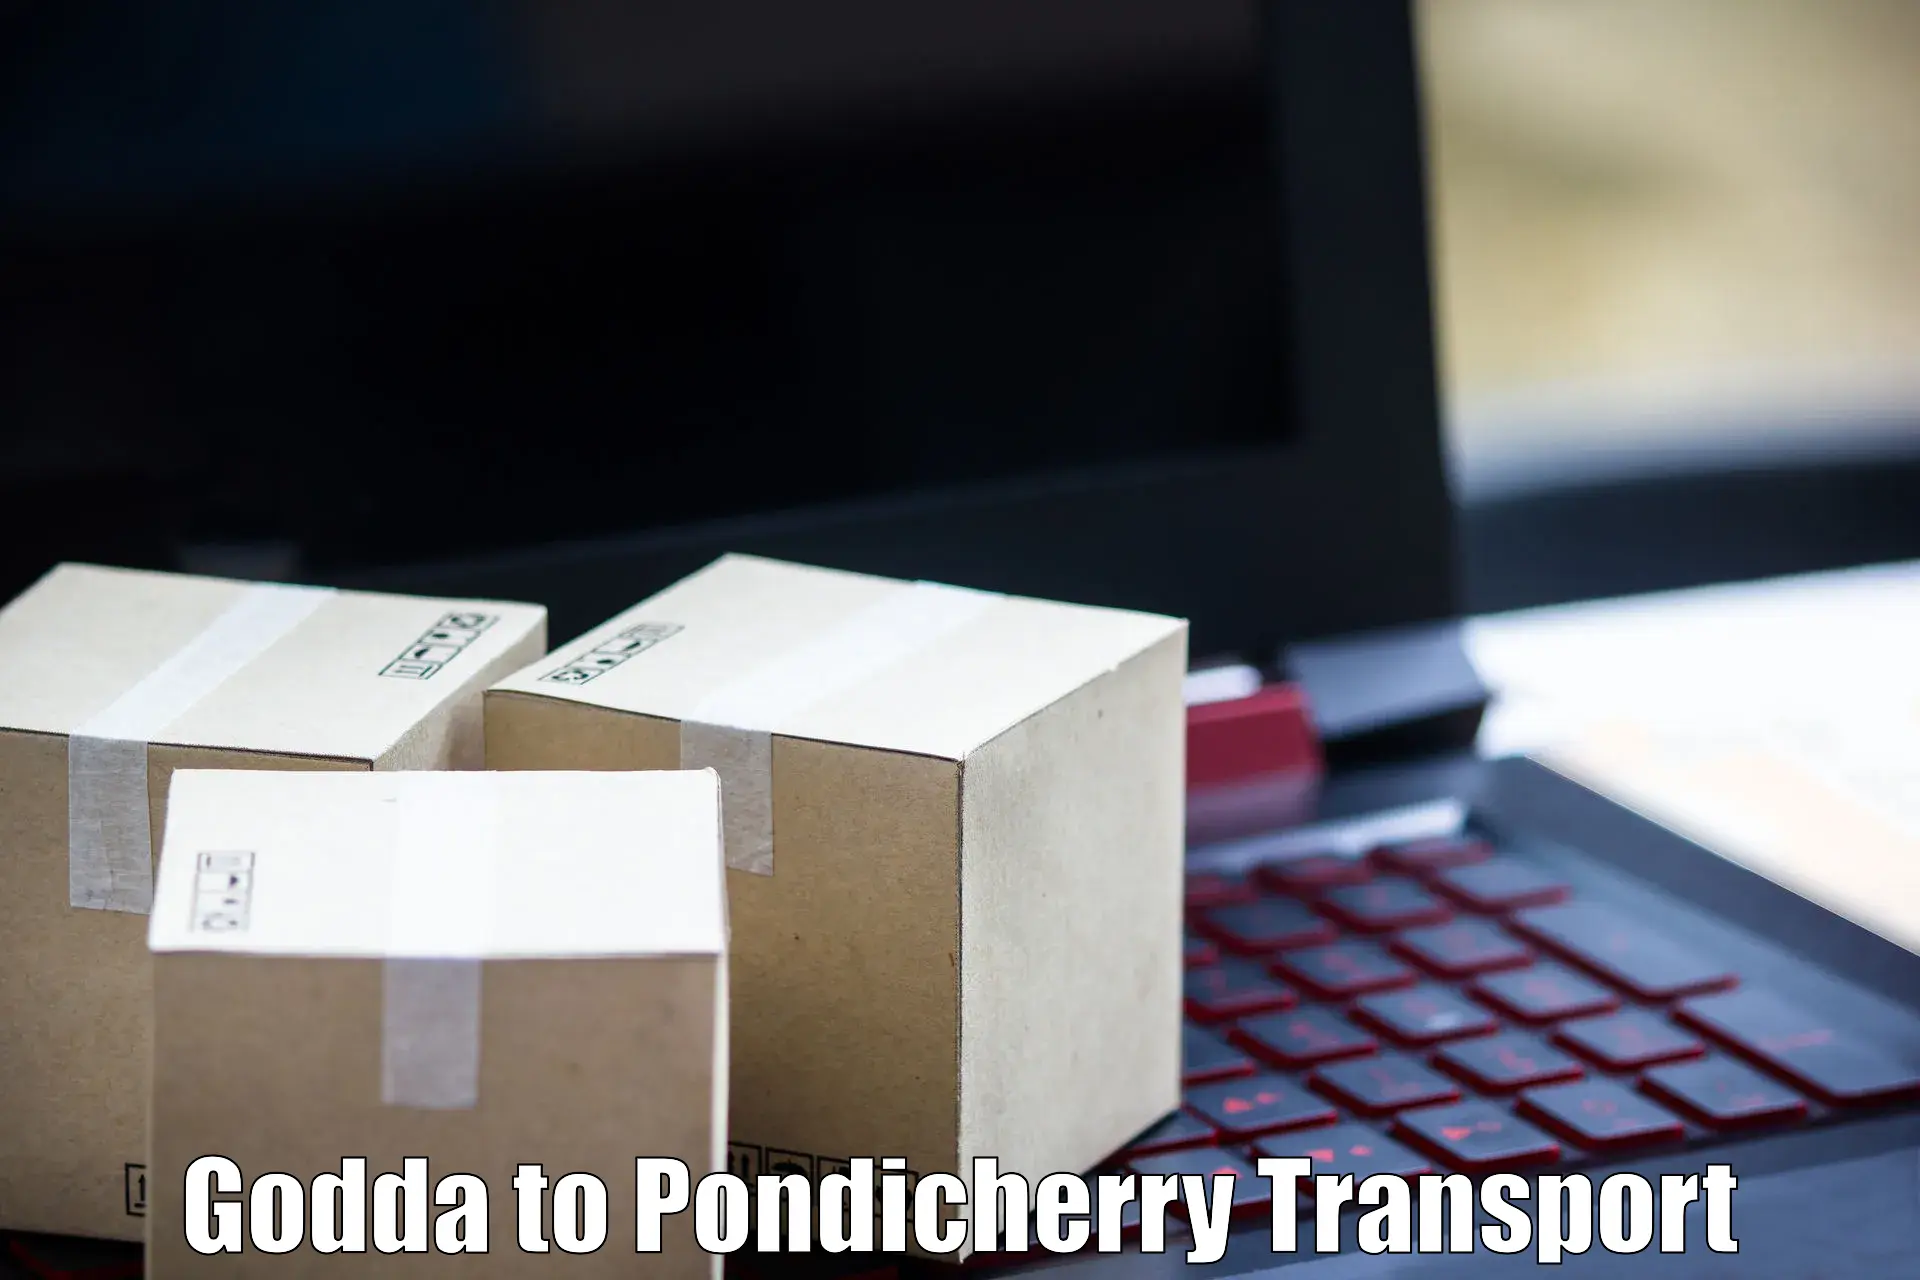 Transport in sharing Godda to Pondicherry University